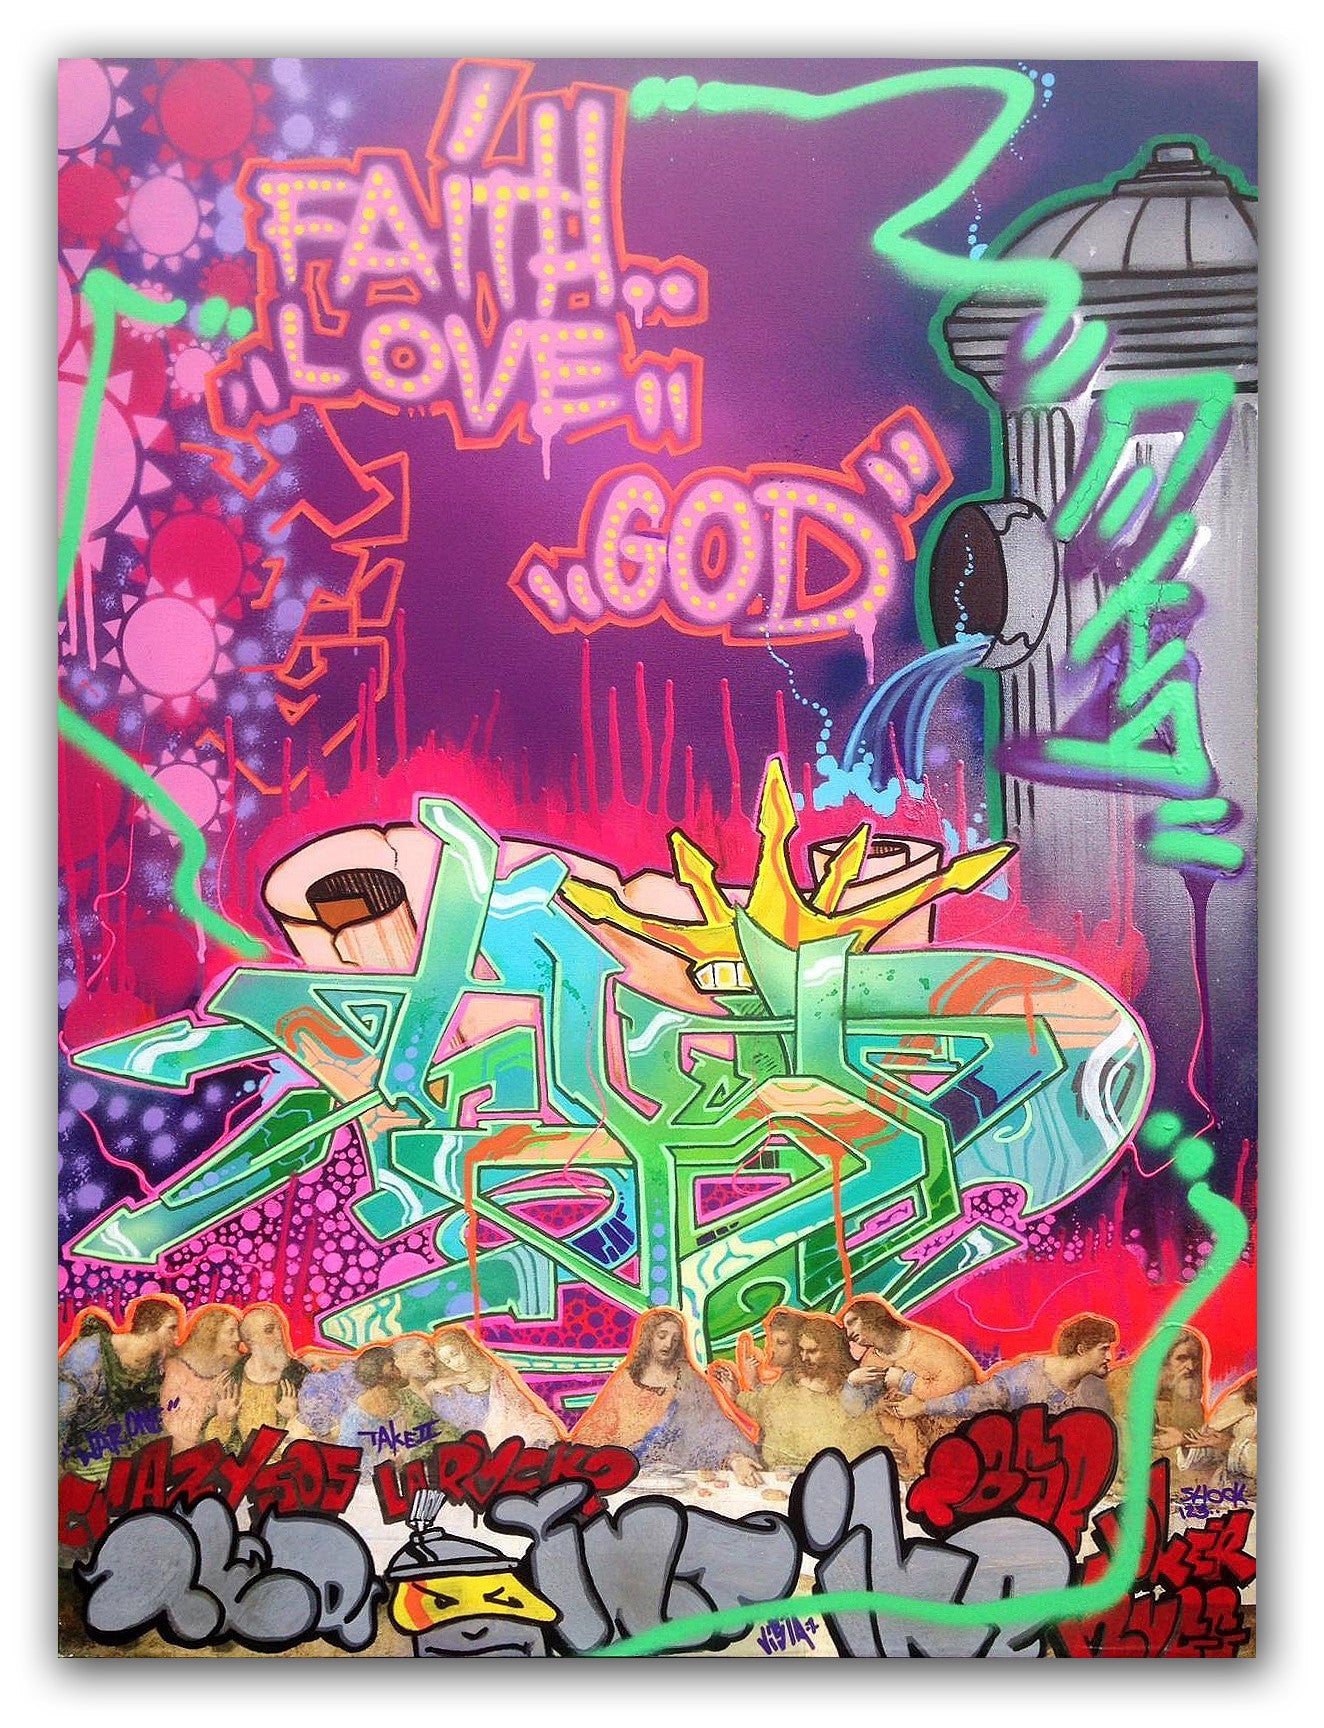 T-KID 170  - "Faith, Love, God"  Painting